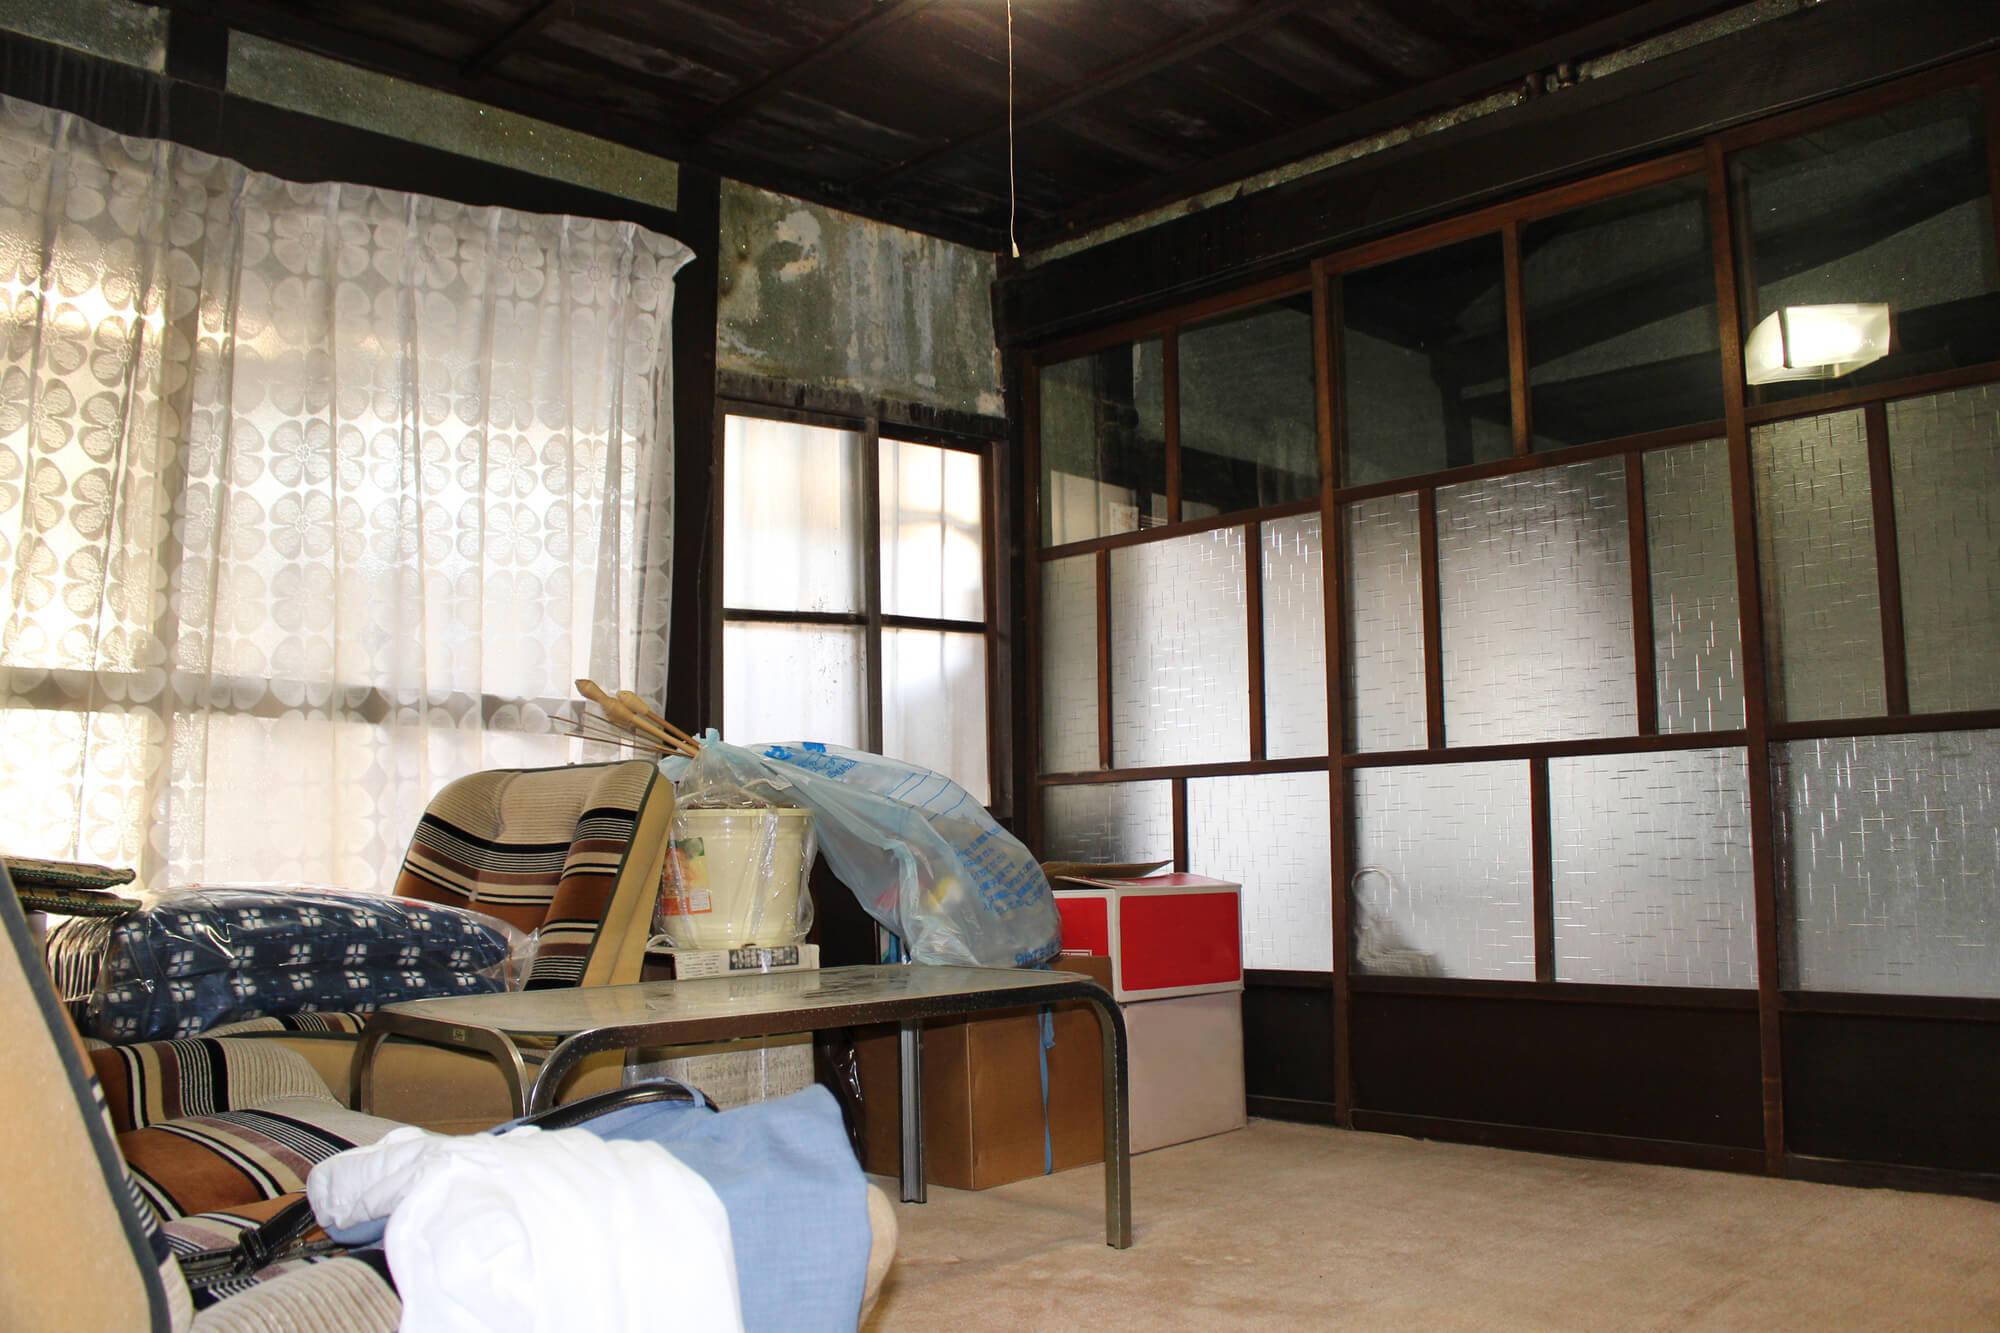 愛知県岡崎市でゴミ屋敷・汚部屋を処分する方法、かかる費用や条例解説